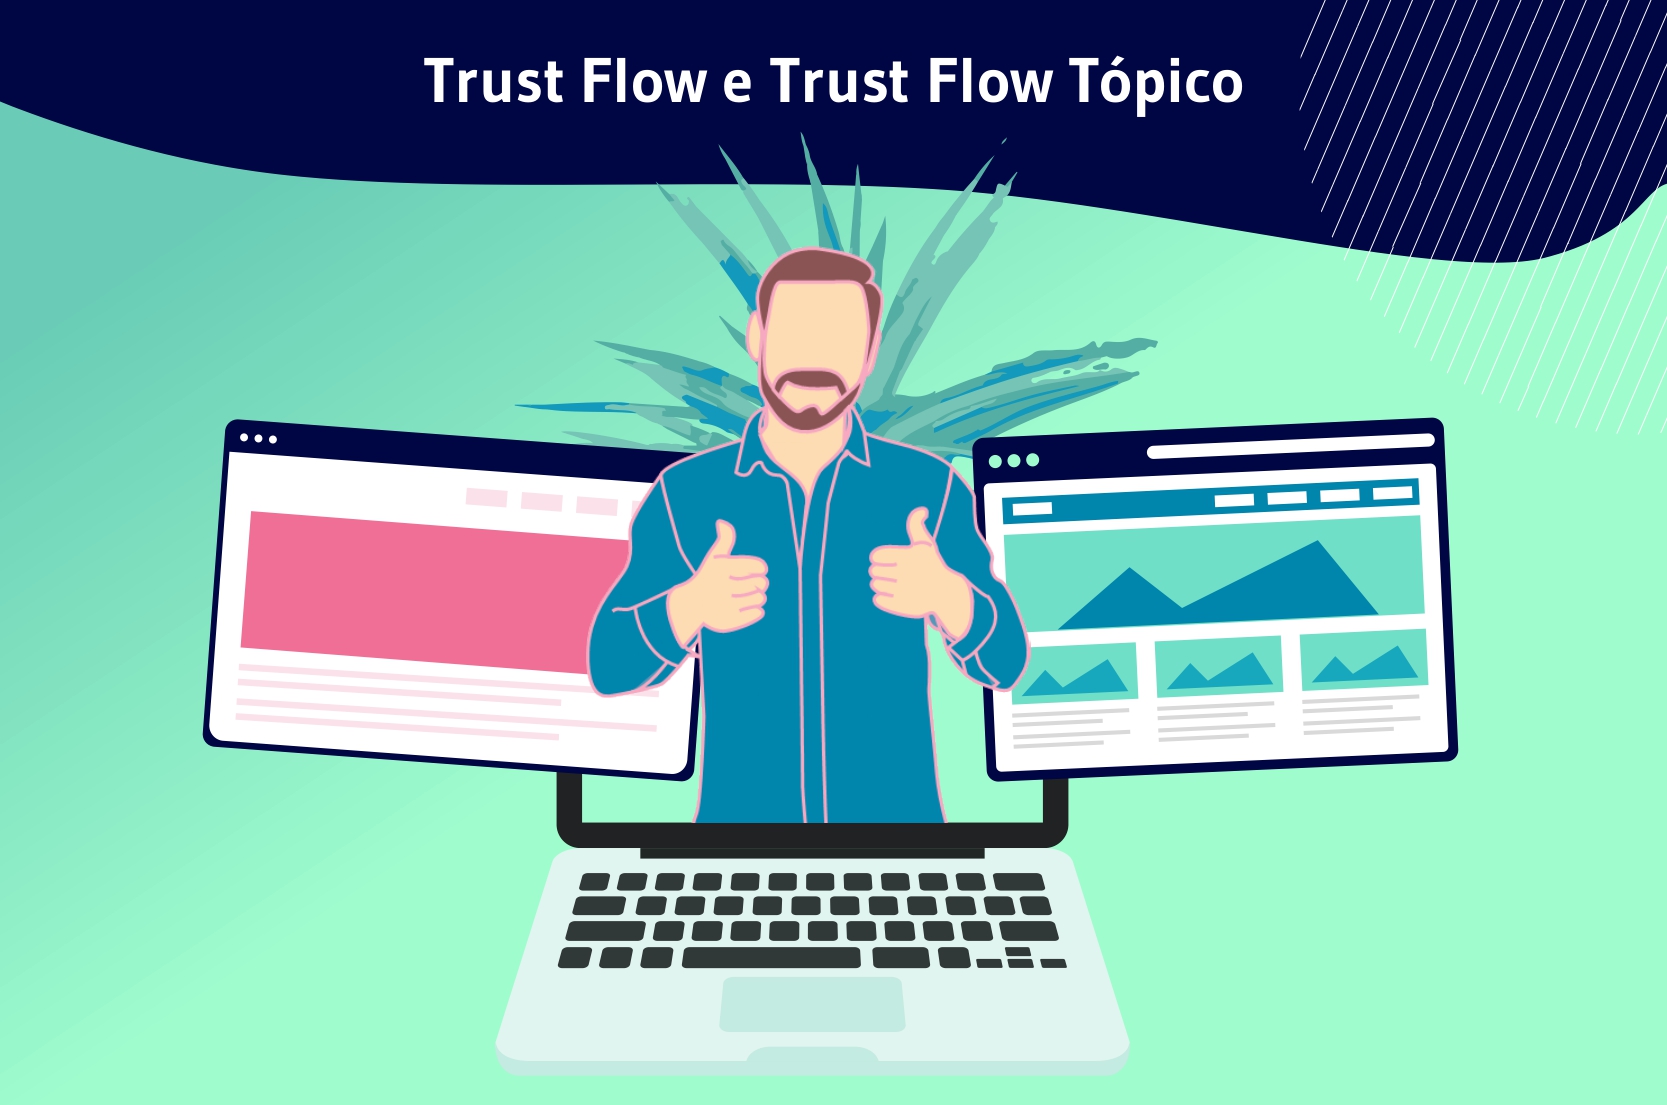 Trust flow e trust flow tópico